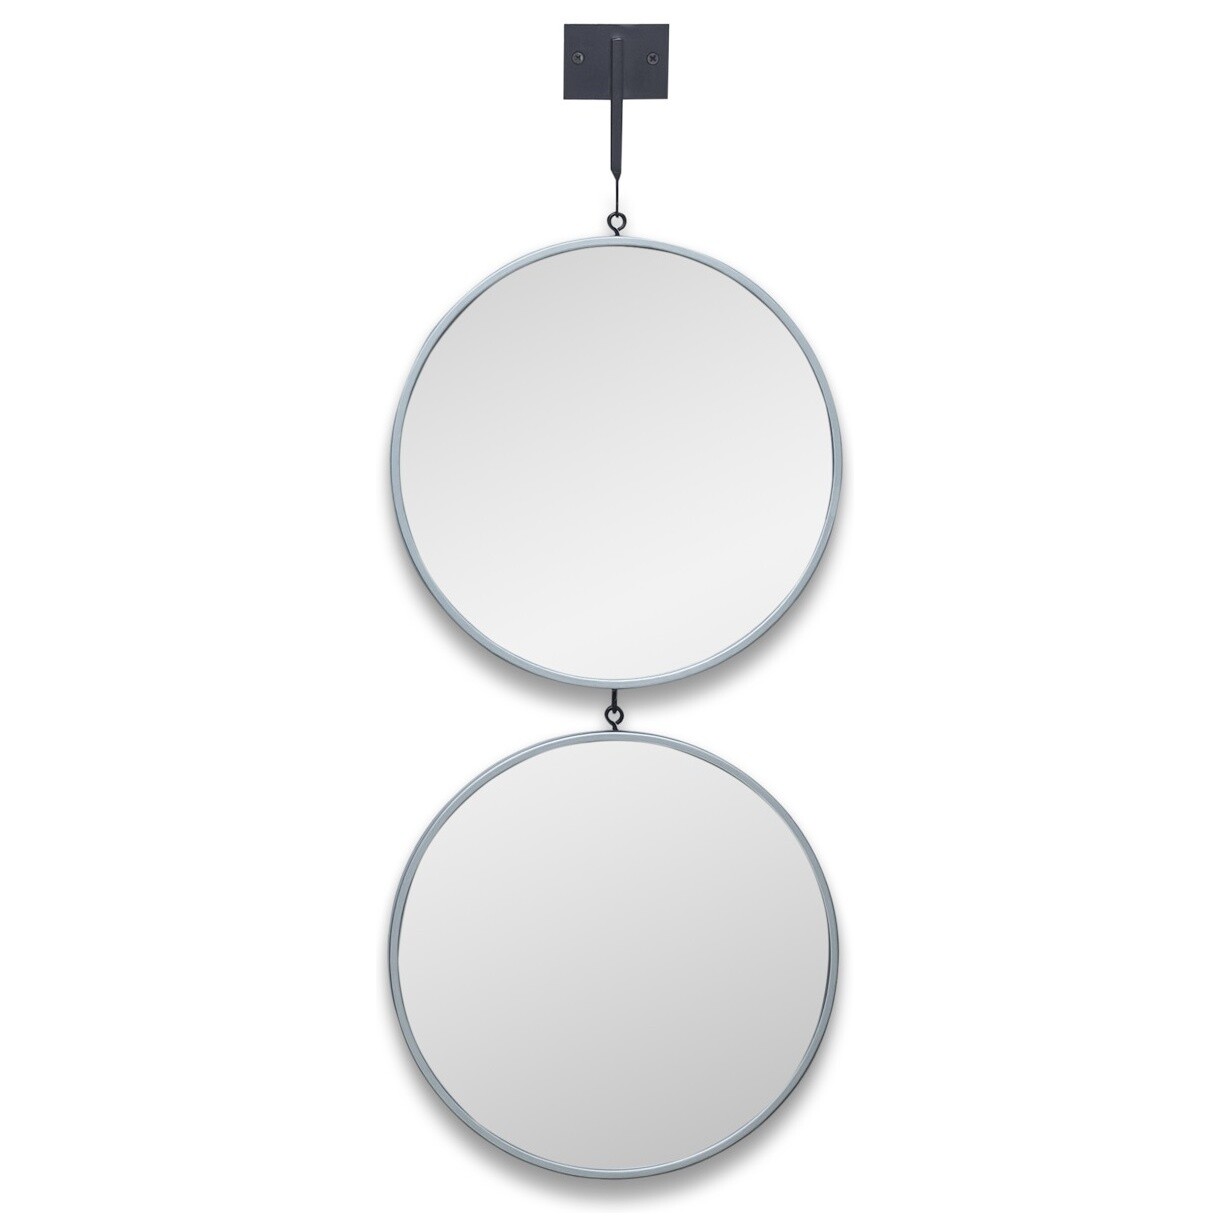 Зеркала настенные круглые на подвесе тандем в тонкой раме серебро Tandem S Silver